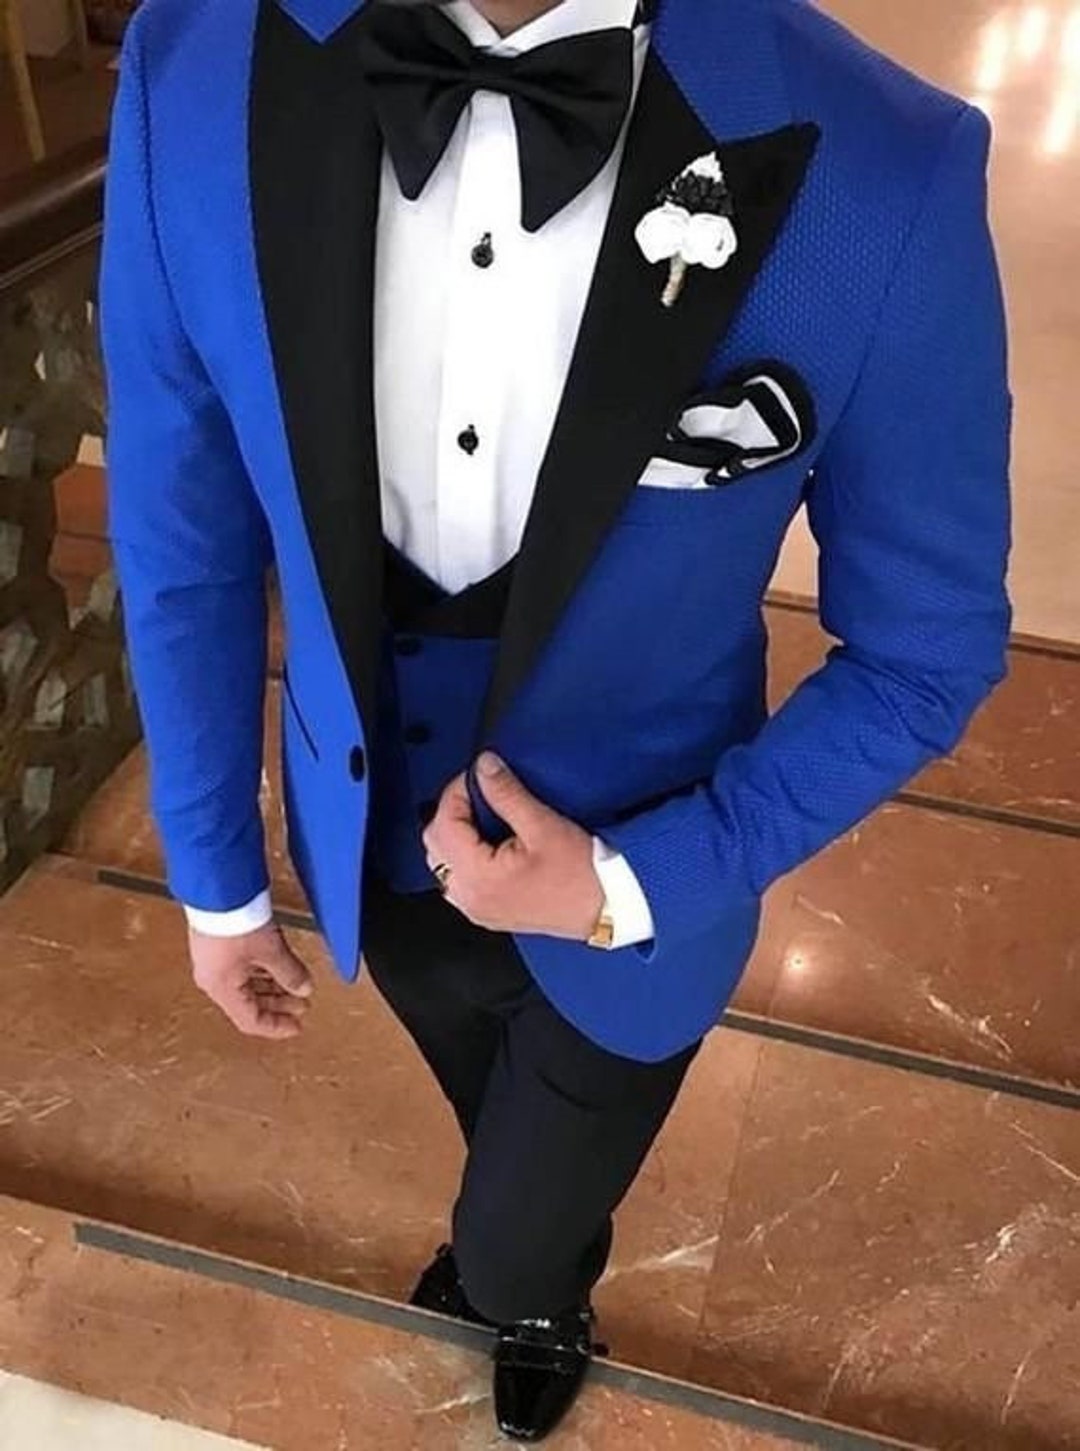  Royal Blue Tuxedo For Prom